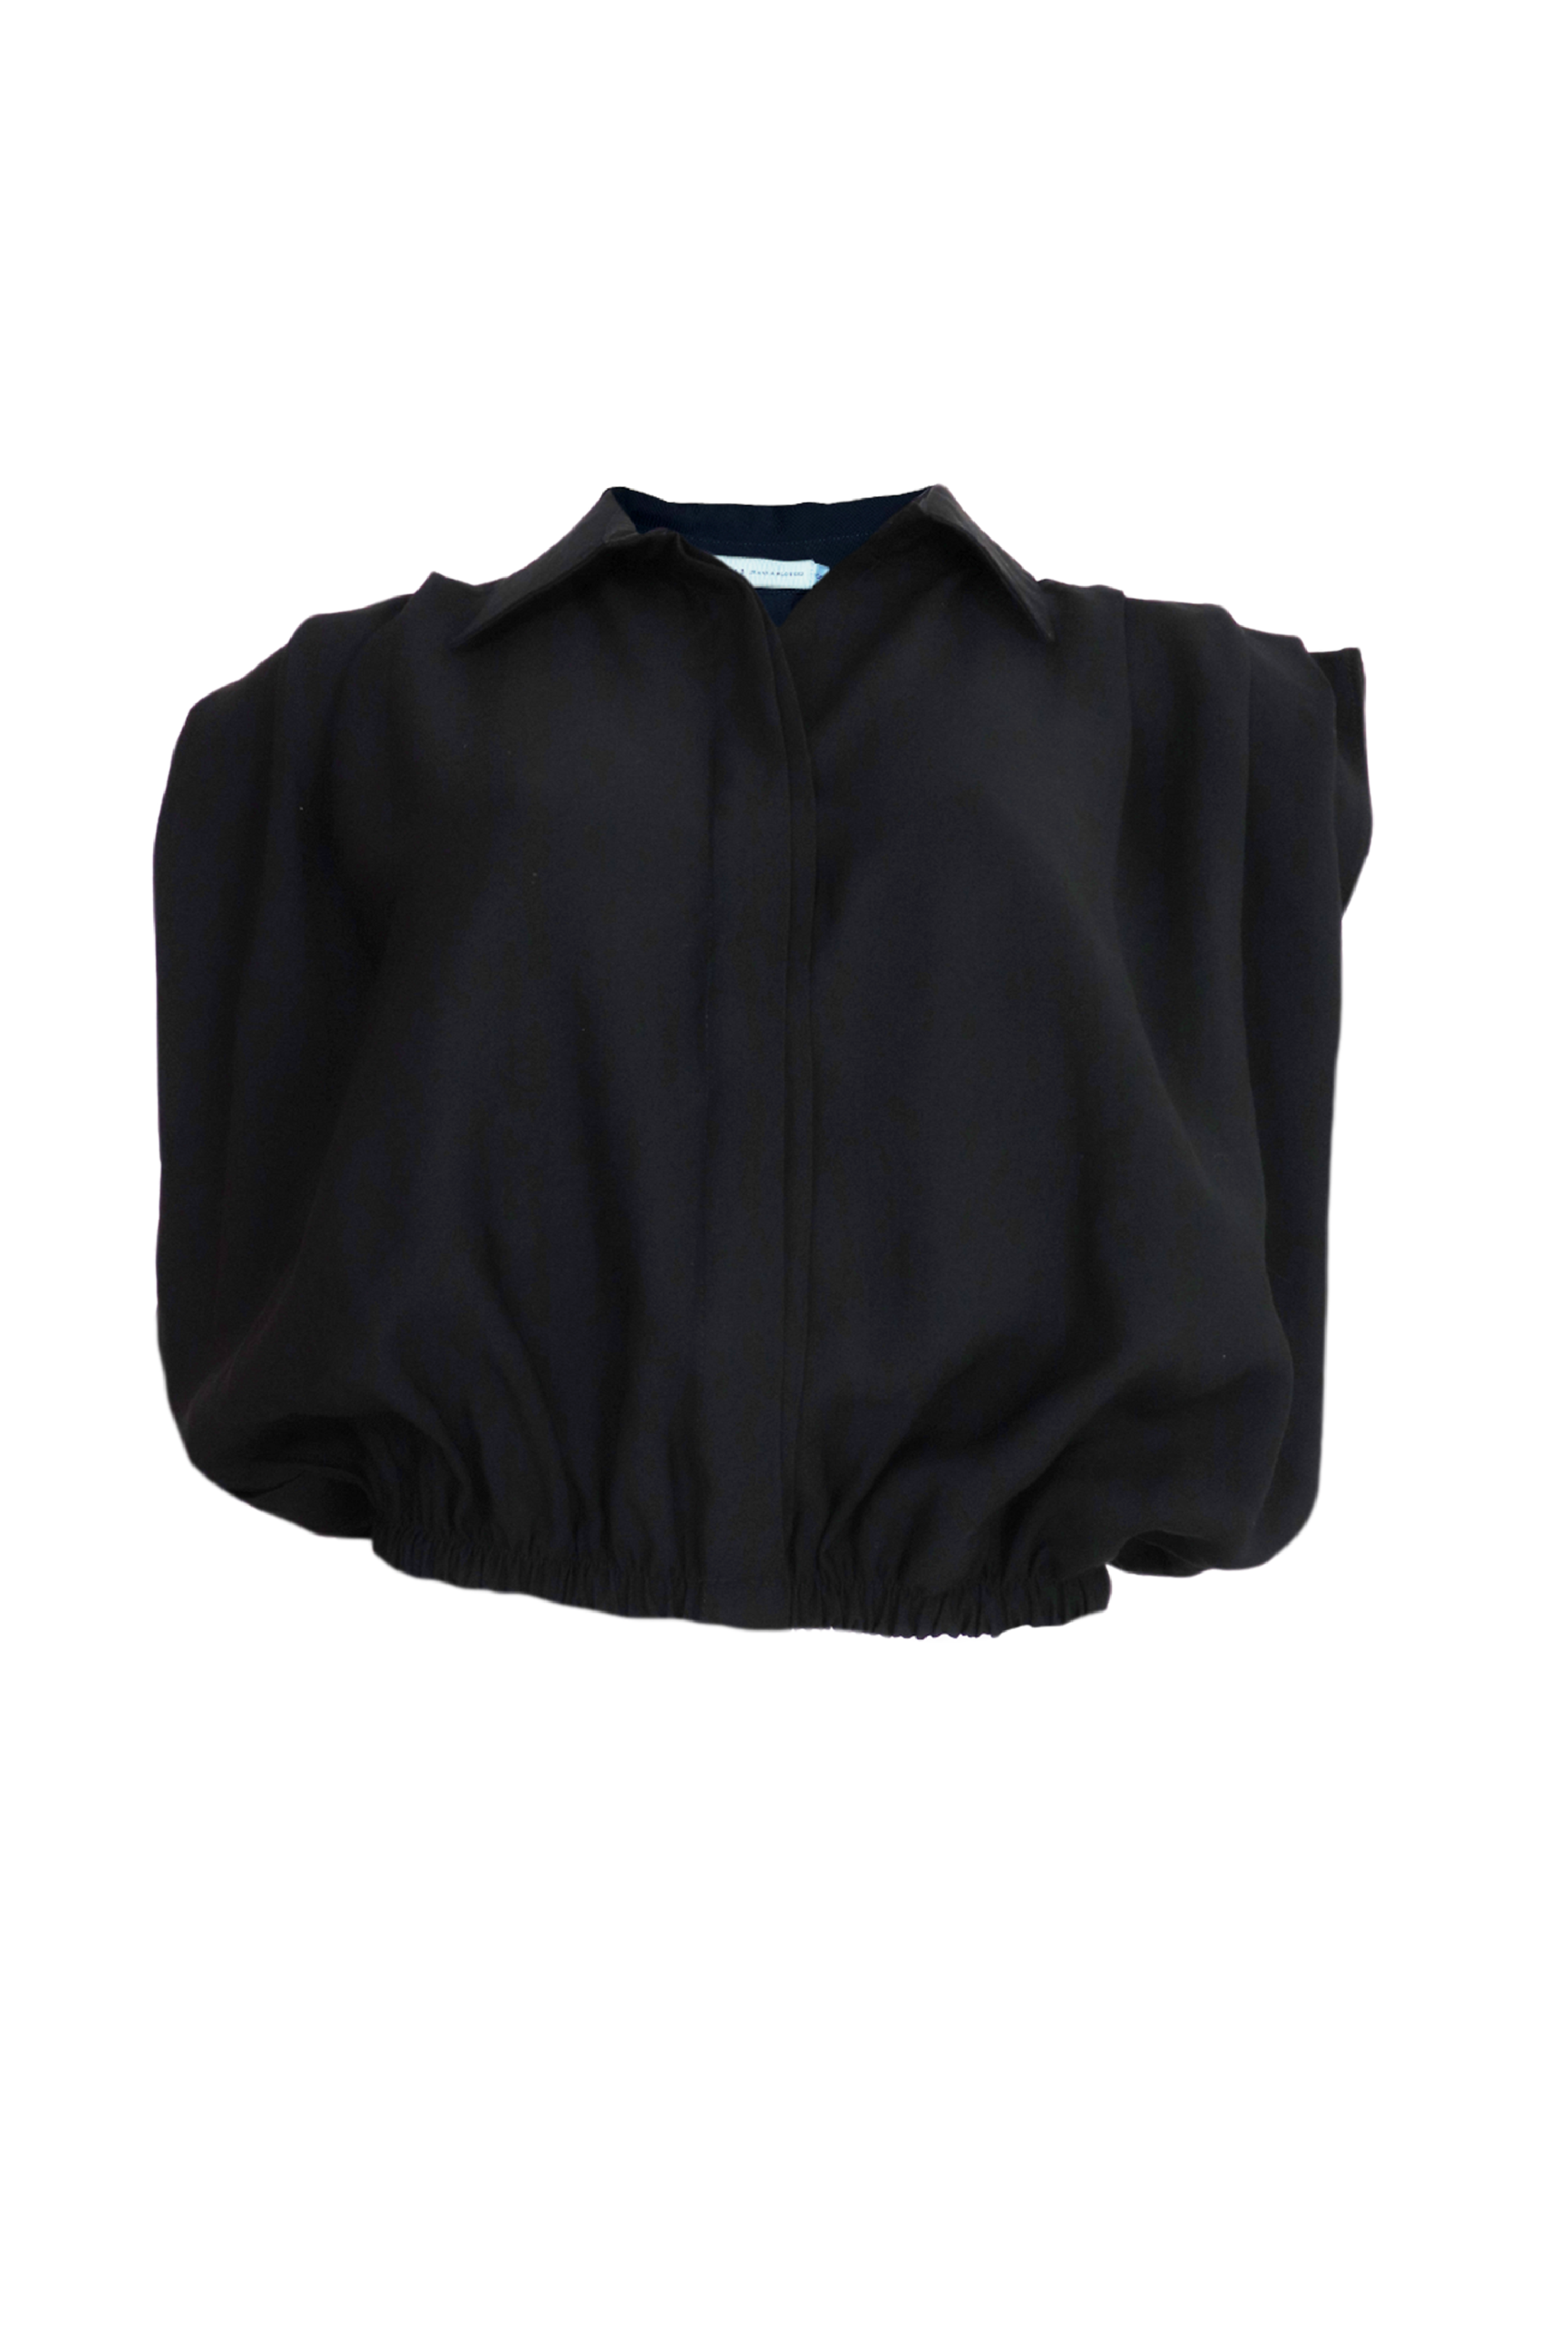 Hermosa blusa con escote en V color negro